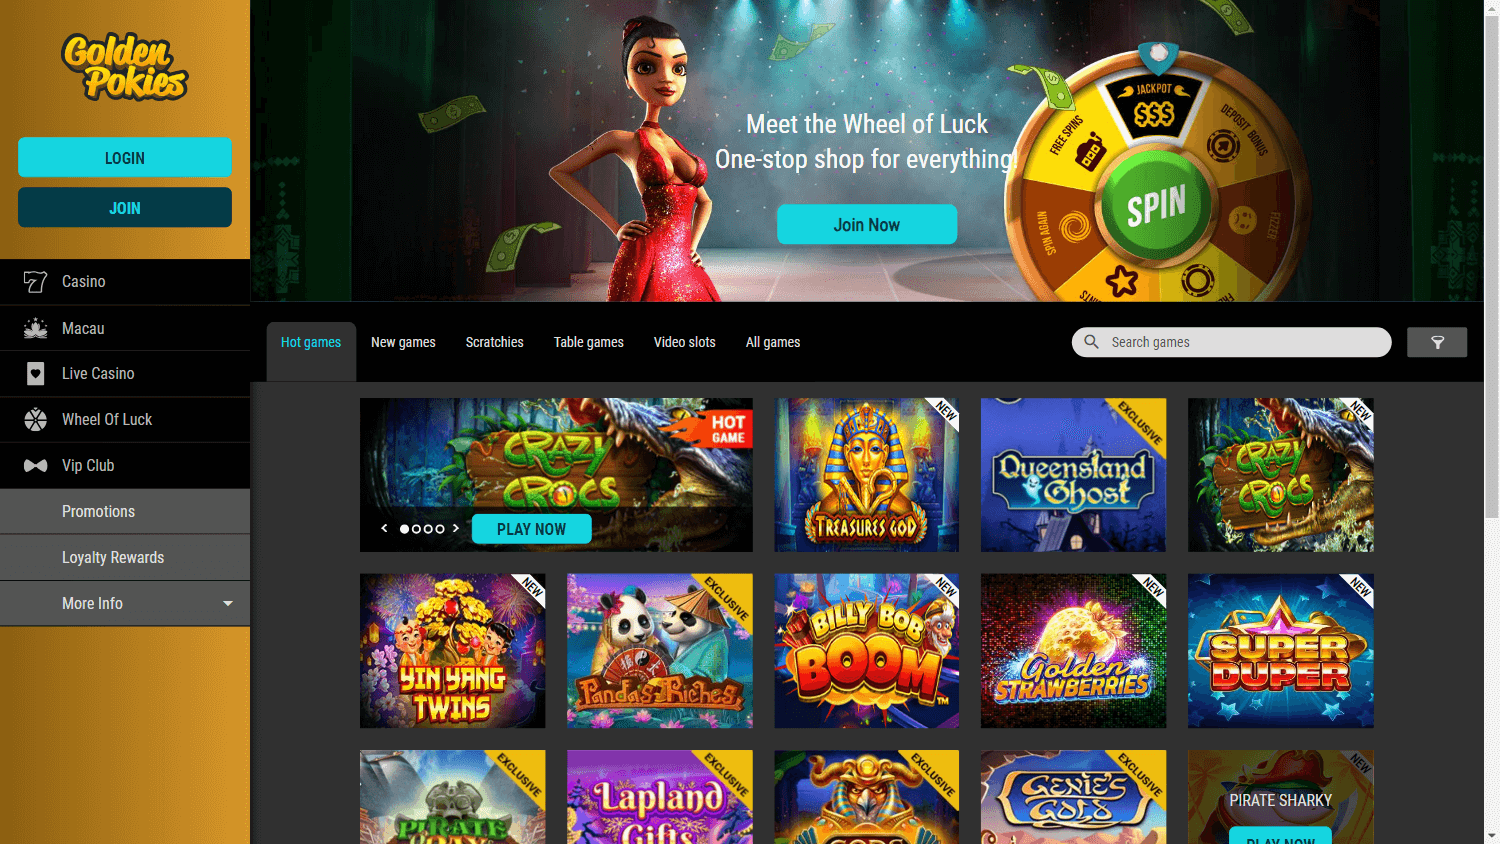 golden_pokies_casino_homepage_desktop